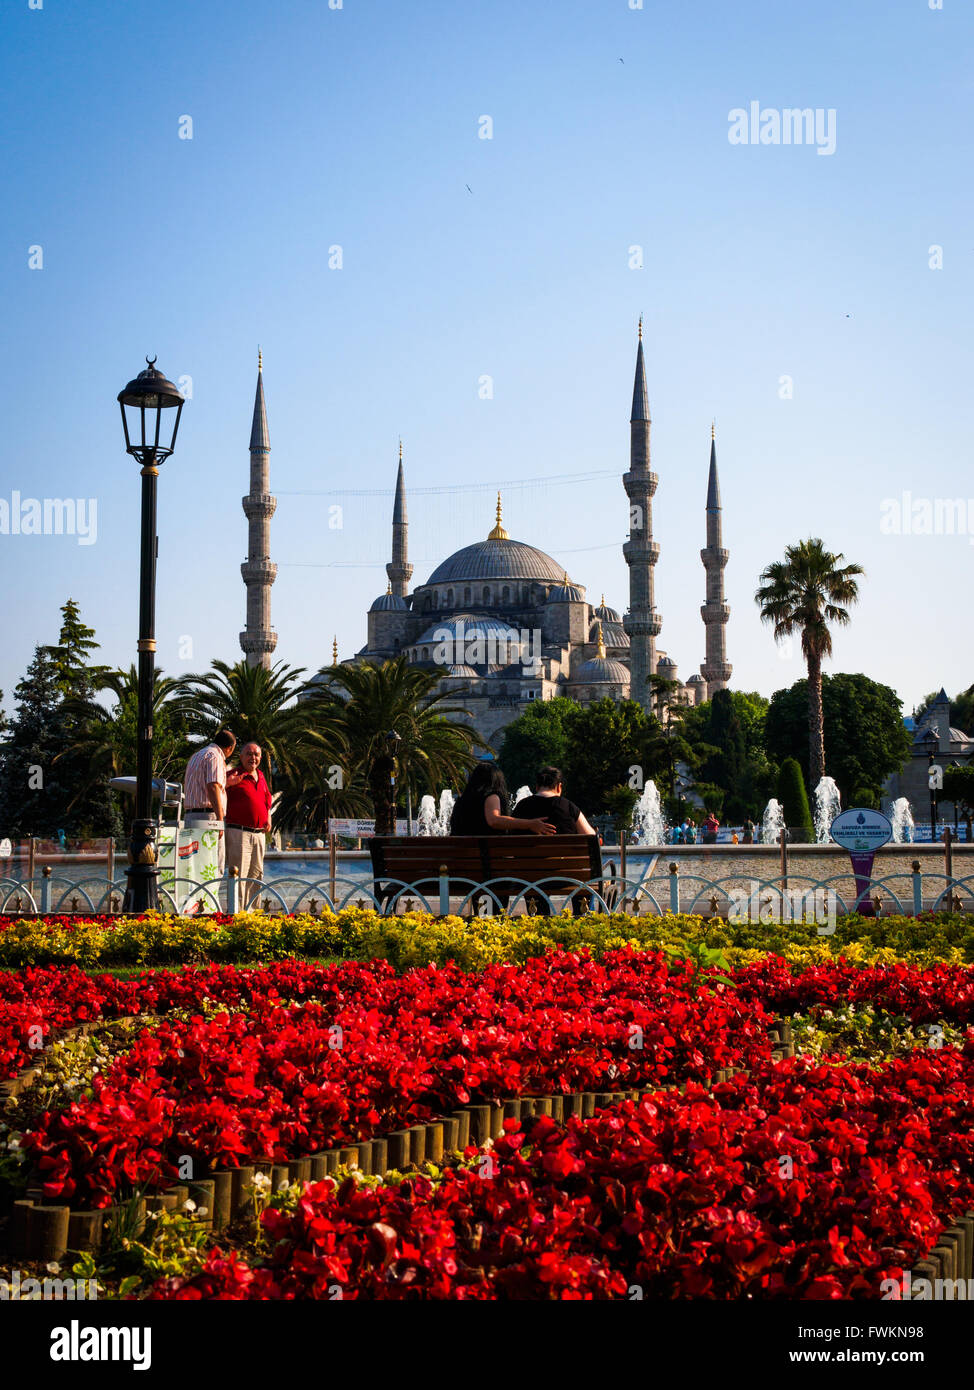 Blick über rote und gelbe Blume Garten im Sultanahment Park, die berühmte blaue Moschee (Sultan Ahmed Mosque) in Istanbul, Türkei Stockfoto